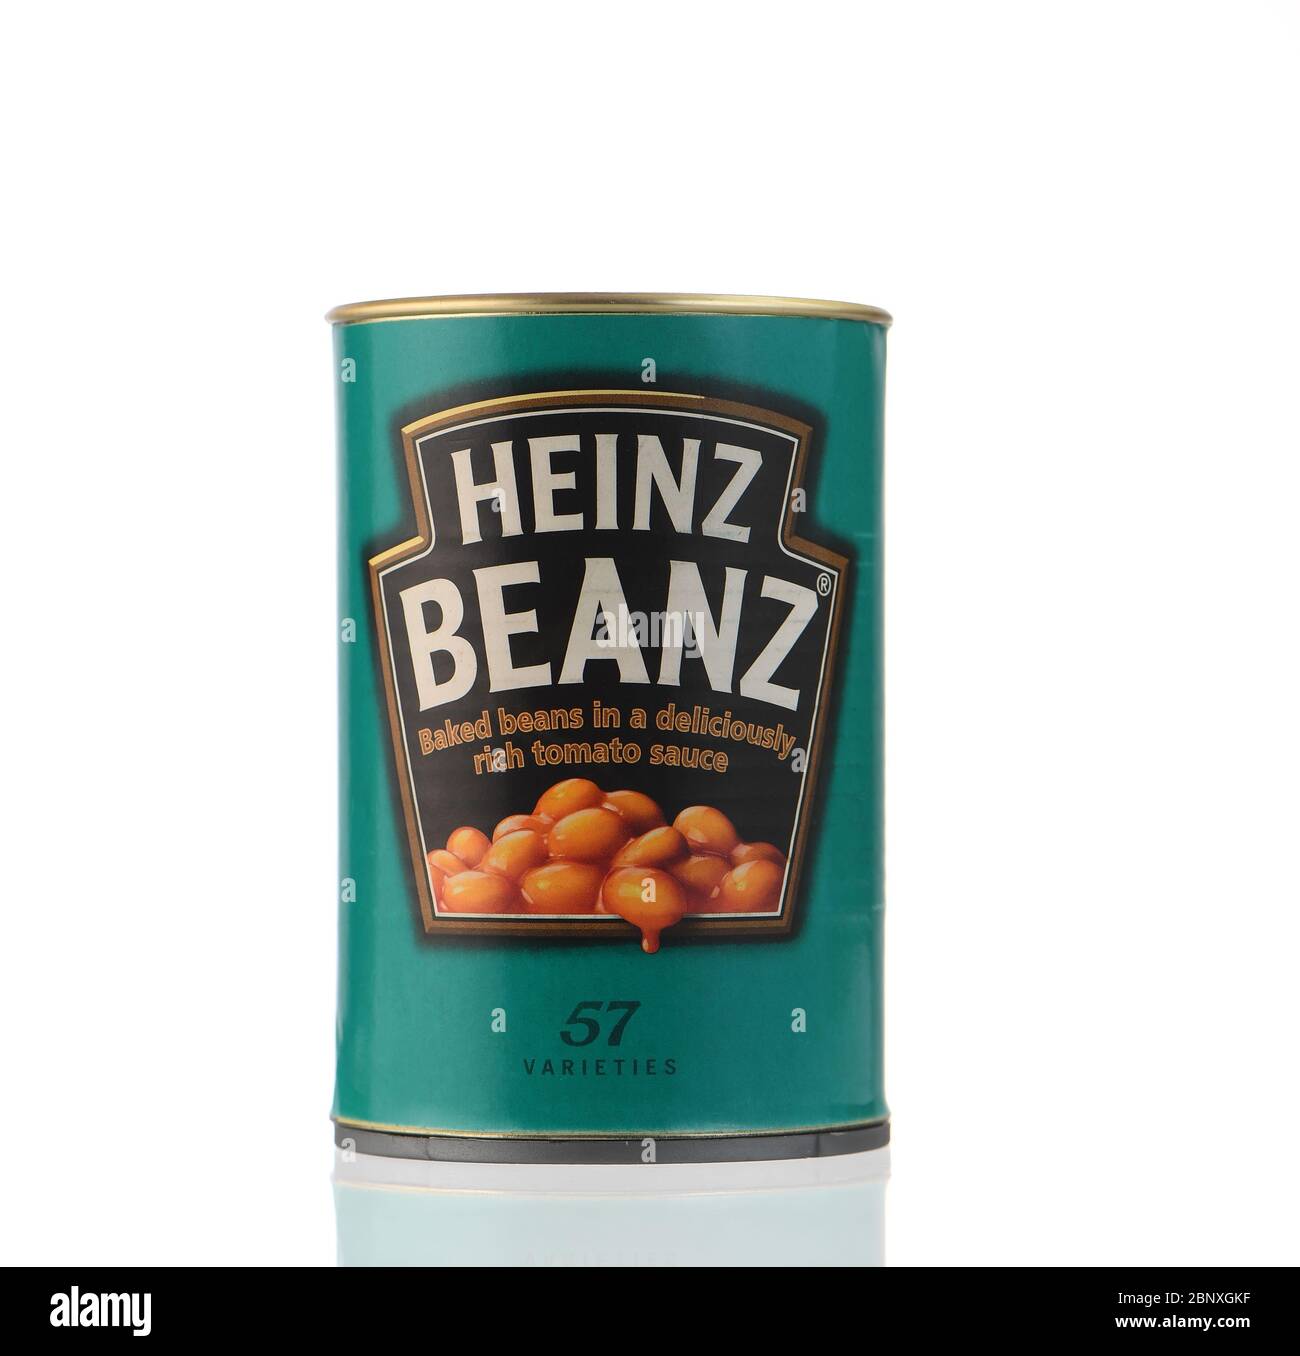 SicherheitsDose, eine gefälschte Heinz beanz Dose, die einen falschen Boden hat, damit man Wertsachen darin verstecken kann. Zwei Bilder stehen ebenfalls zur Verfügung, um CAN in Aktion zu zeigen Stockfoto